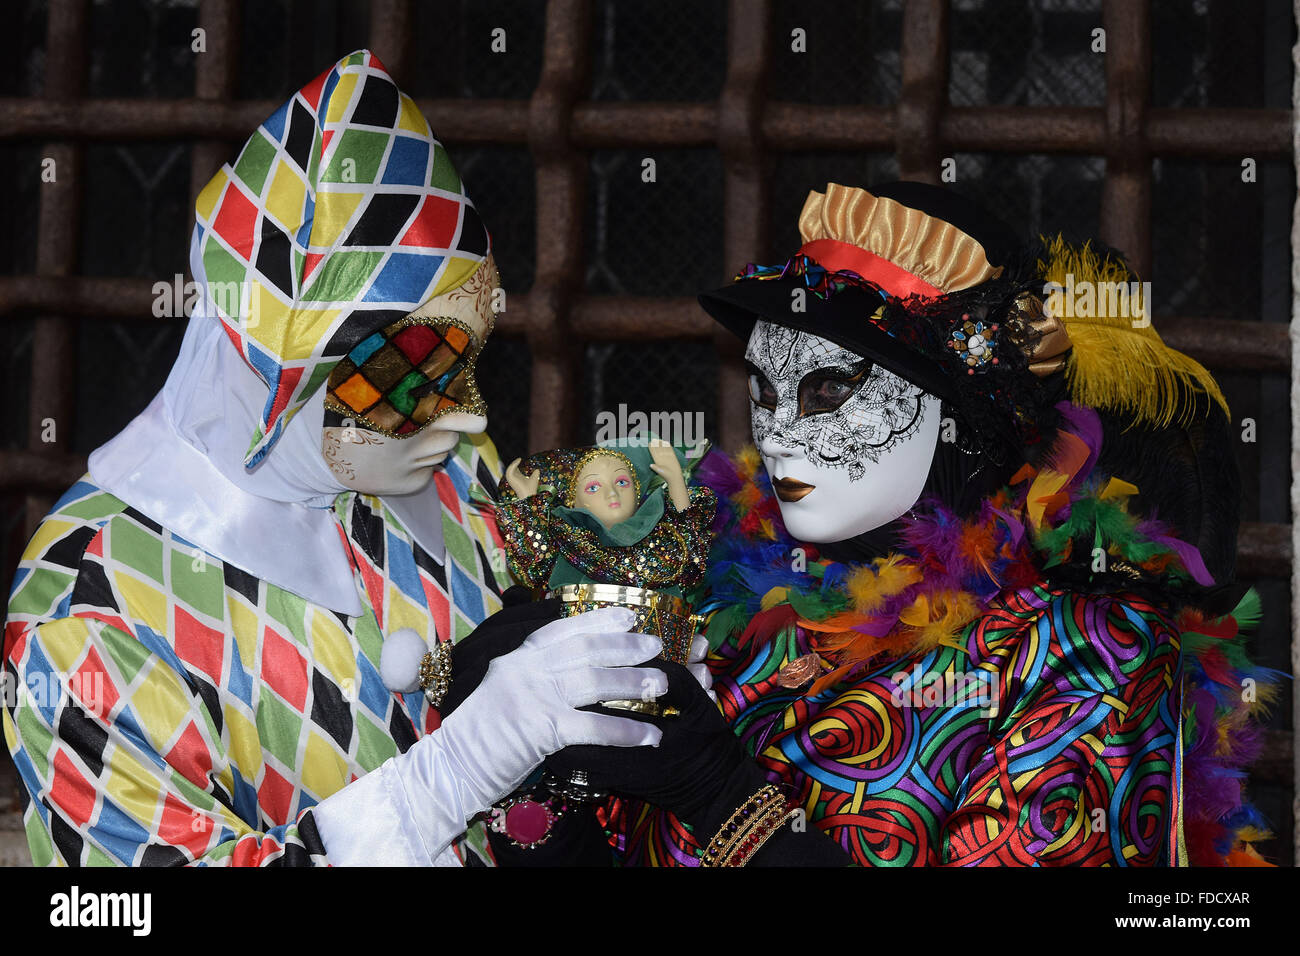 Venedig, Italien. 30. Januar 2016. Der Karneval von Venedig ist ein jährliches Festival in Venedig statt. Karneval offiziell läuft für 10 Tage auf die christliche Feier der Fastenzeit, in diesem Jahr endet jedoch gehörte eine Add-on Woche verlängern den Karneval zu helfen Boost Teilnahme nach Venedig auf, was eine in der Regel eine ruhige Zeit für Besucher der Stadt. Bildnachweis: MARTIN DALTON/Alamy Live-Nachrichten Stockfoto